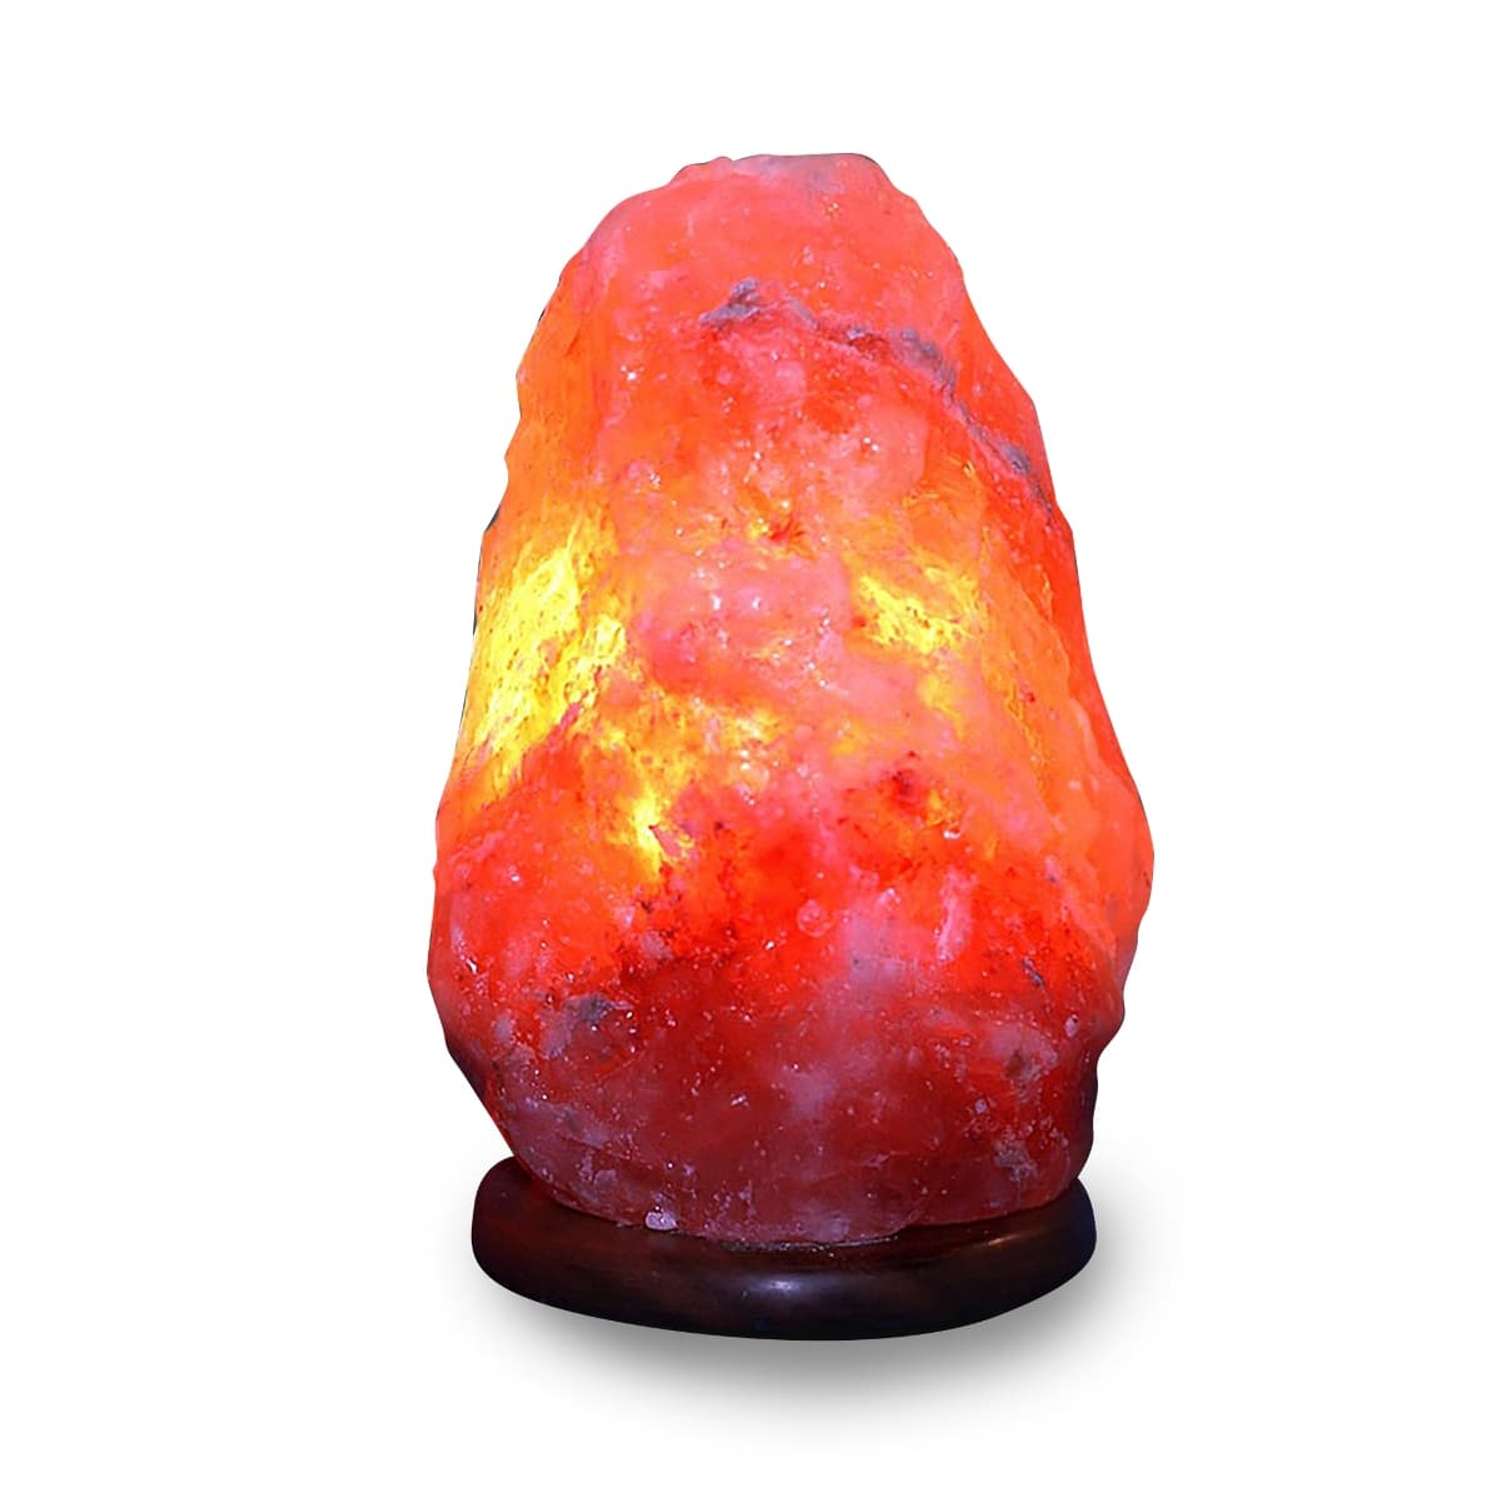 Солевая лампа Wonder Life скала 2-3кг Гималайская соль красного оттенка с диммером - фото 1